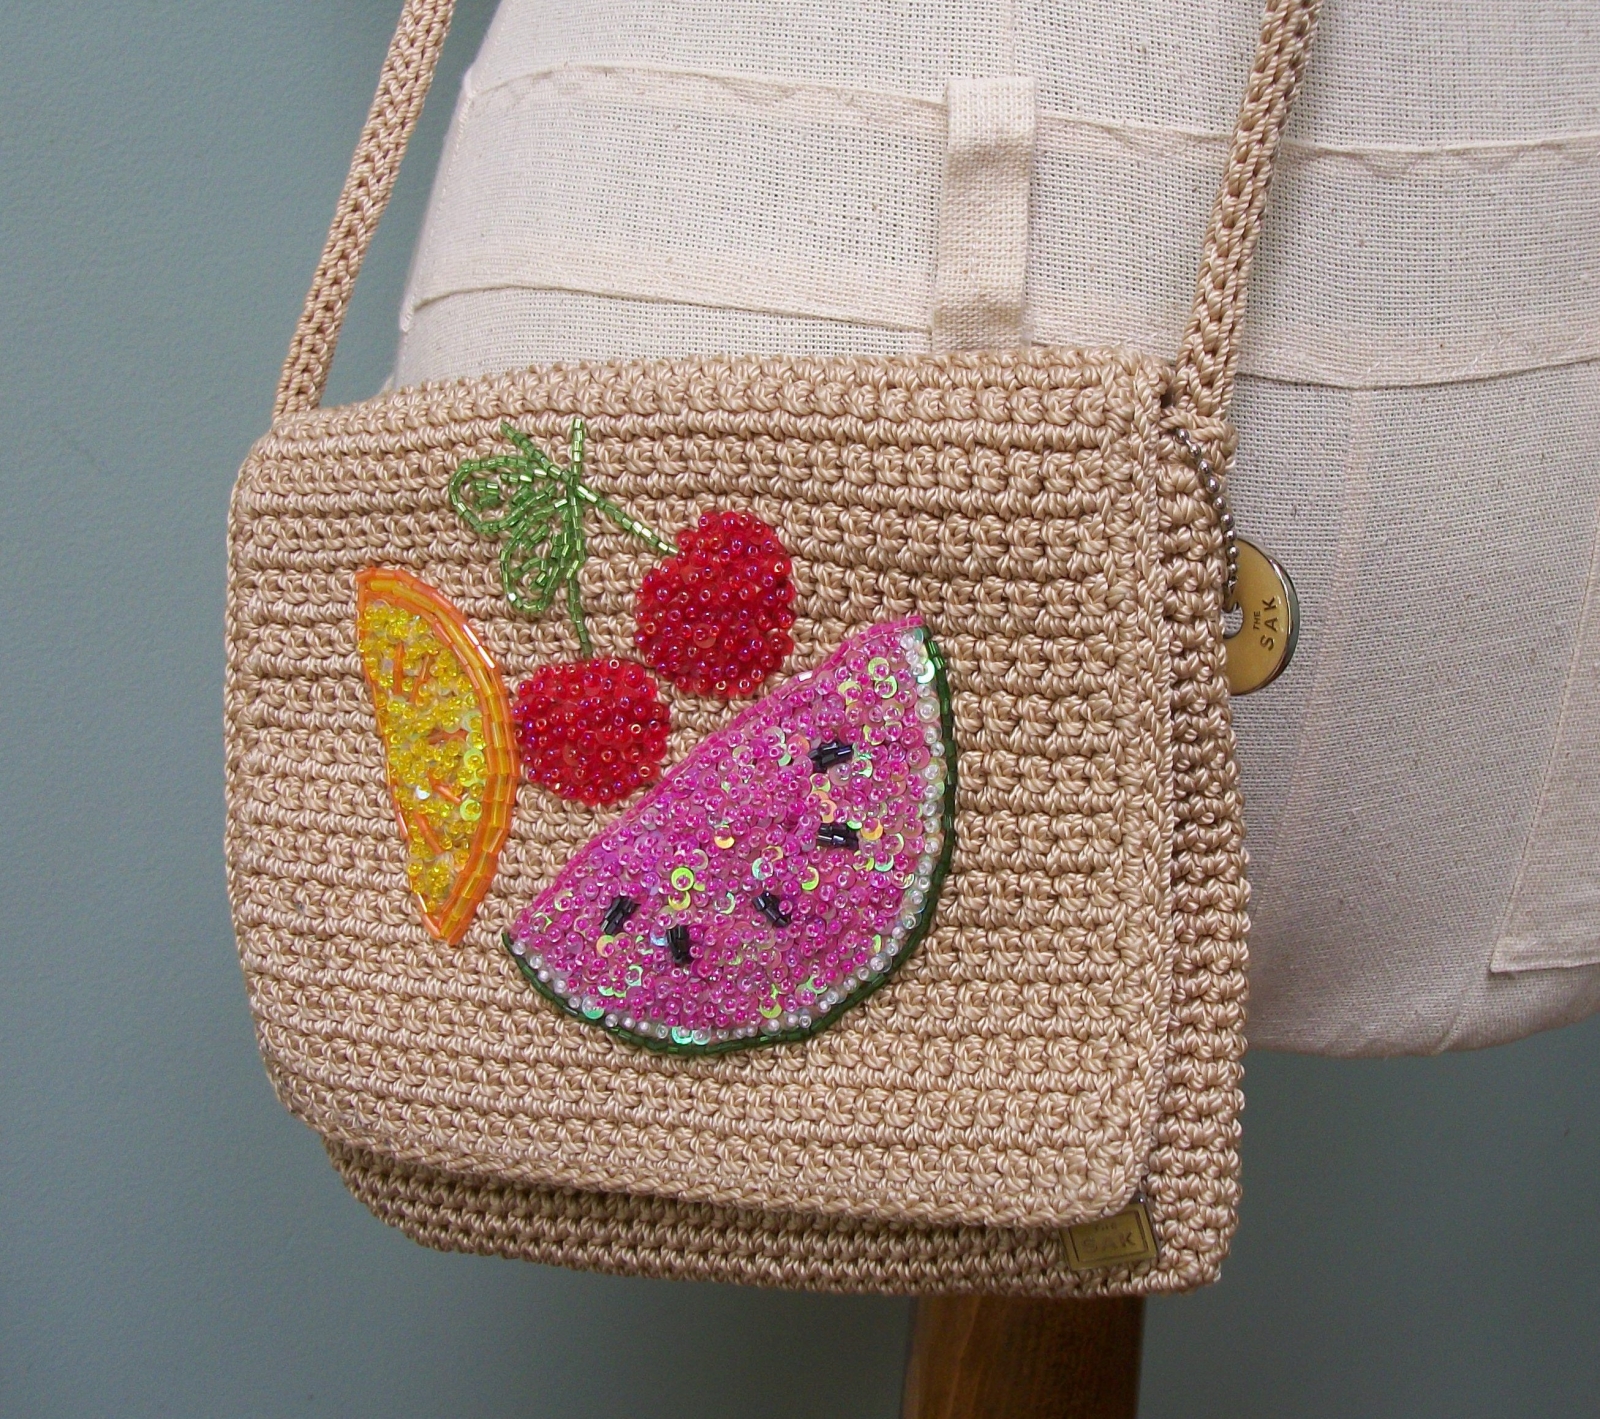 The Sak Shoulderbag the Sak Hobo Bag Vintage Crocheted 